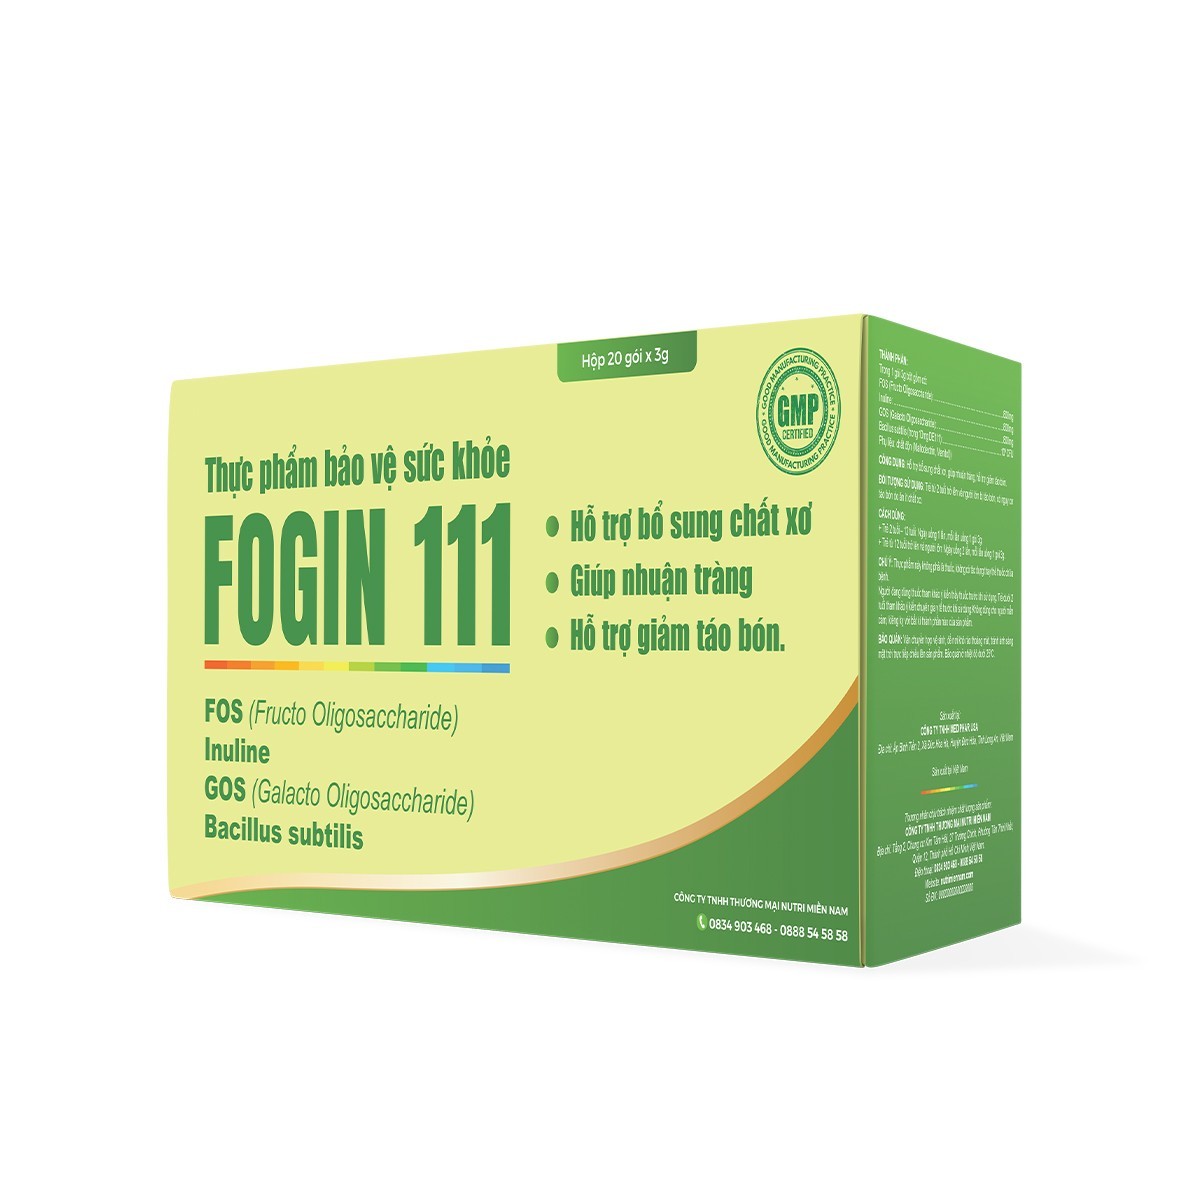 Fogin 111 – Hỗ Trợ Bổ Sung Probiotics và Chất Xơ Giúp Nhuận Tràng, Hỗ Trợ Giảm Táo Bón